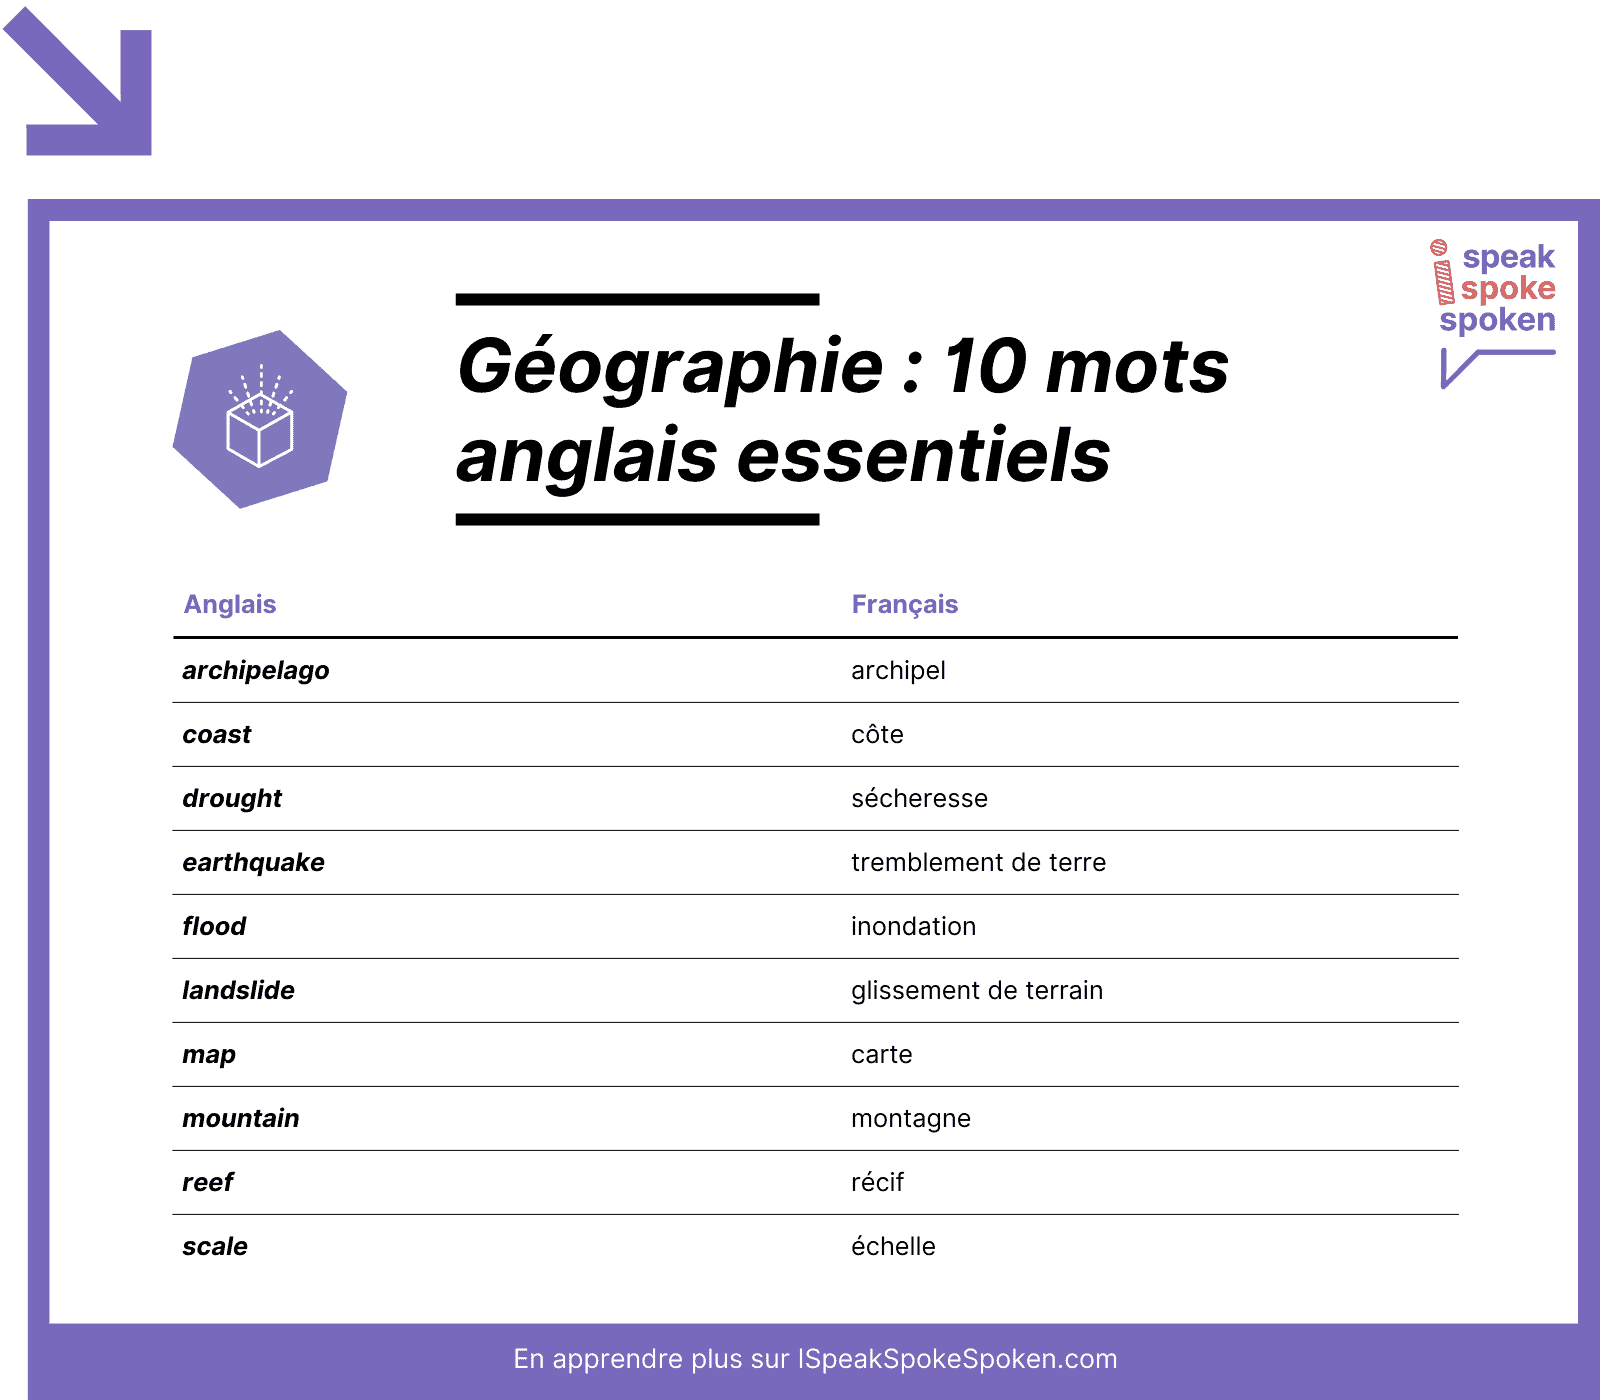 10 mots de vocabulaire anglais essentiels liés à la géographie